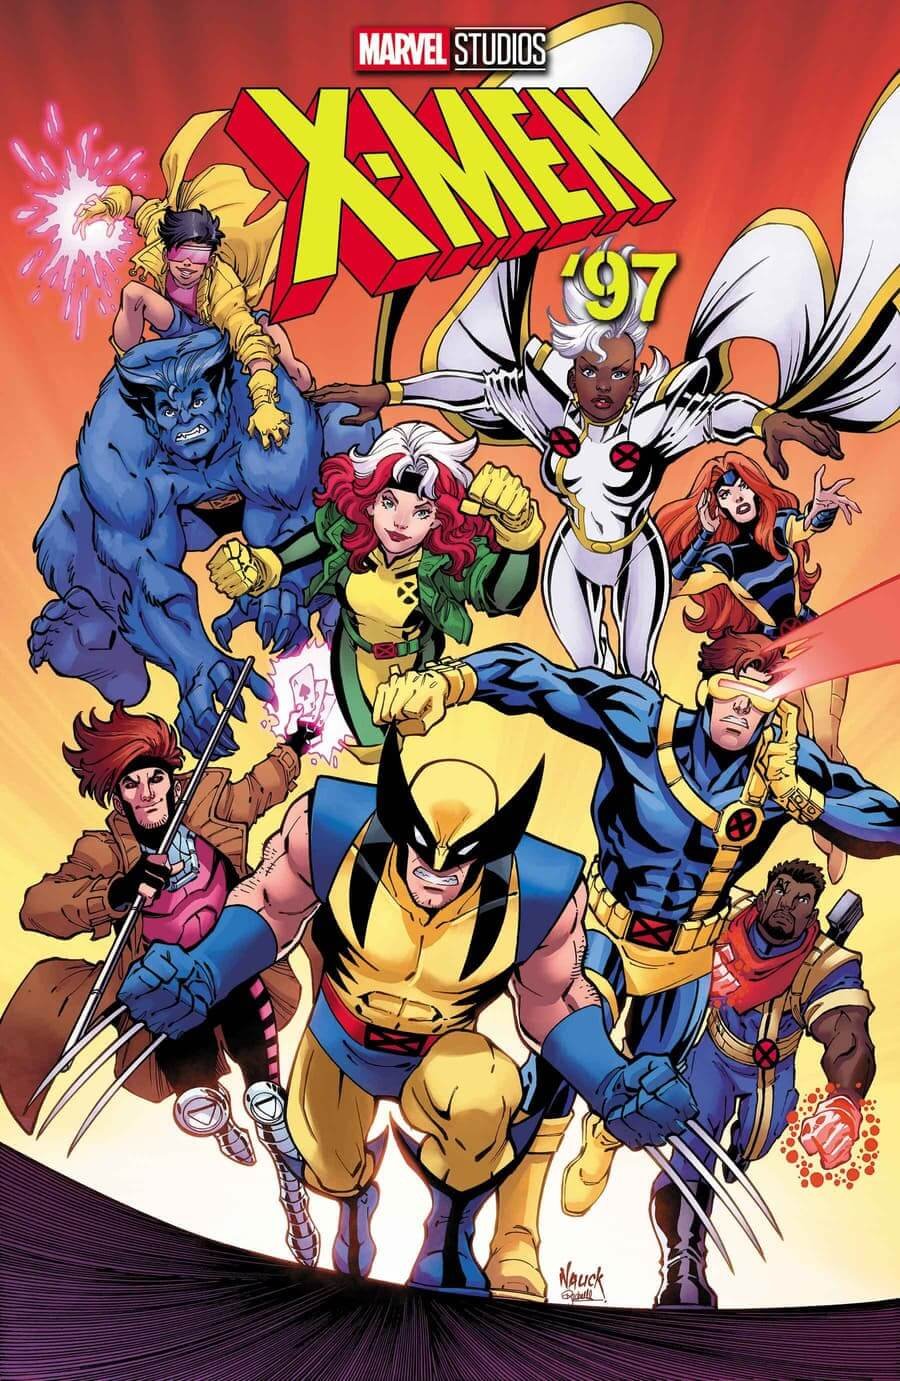 Couverture de X-Men '97 1 par Todd Nauck